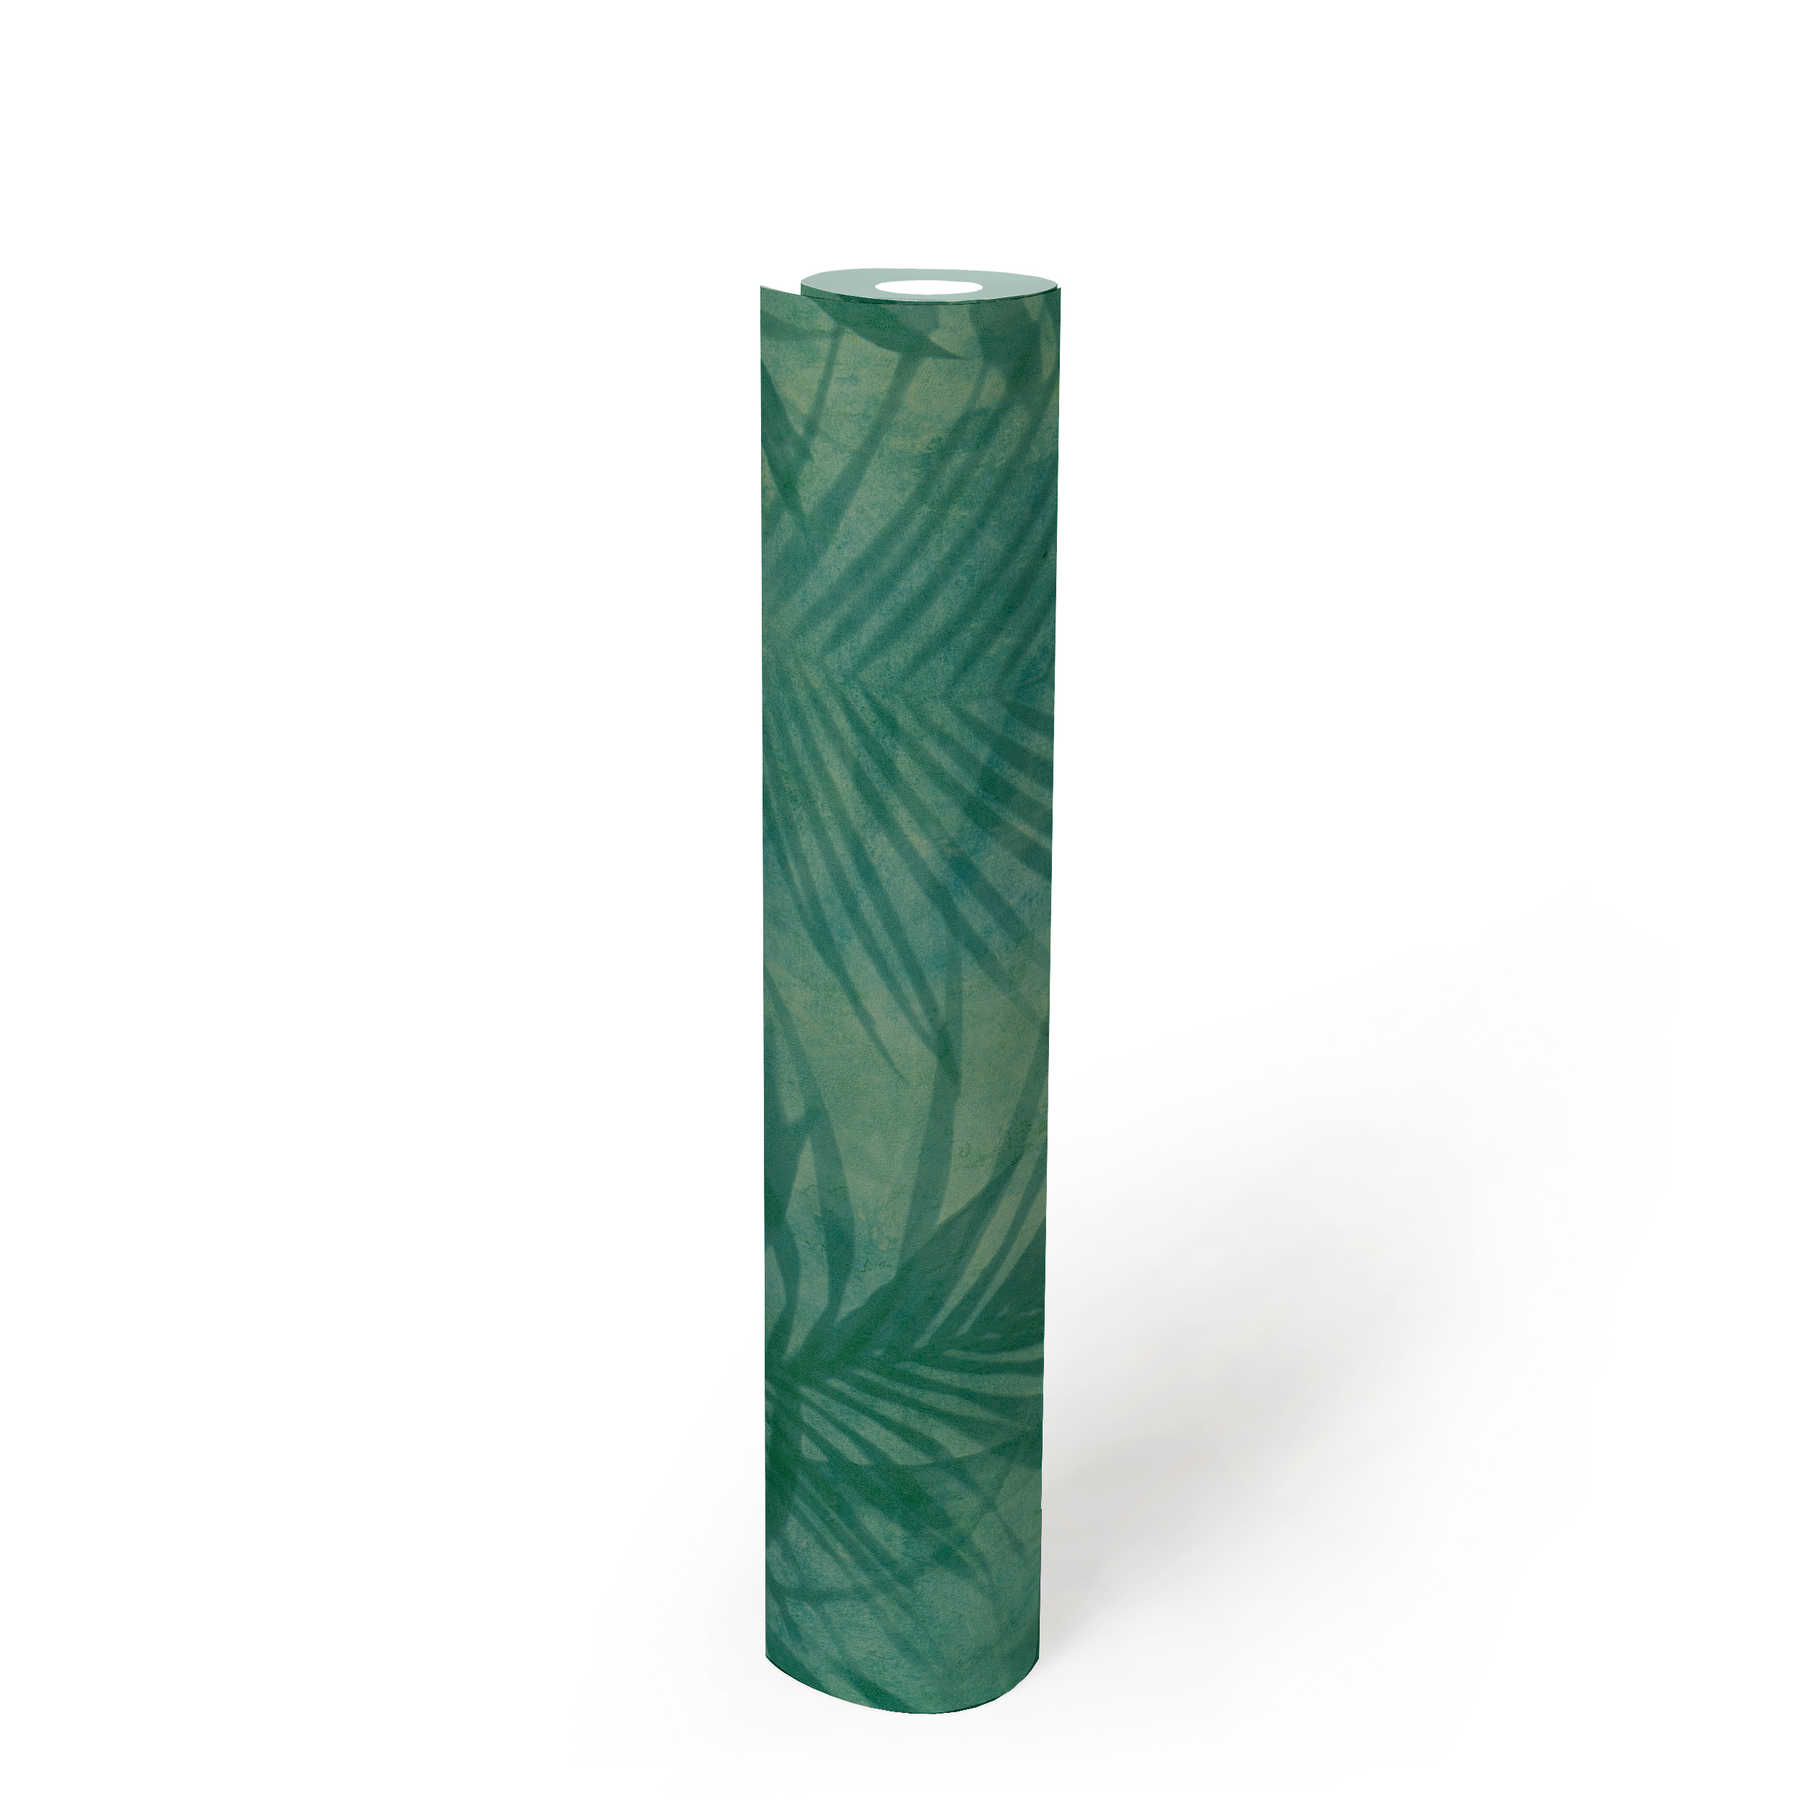             behang palmboom patroon in linnen look - groen, blauw, geel
        